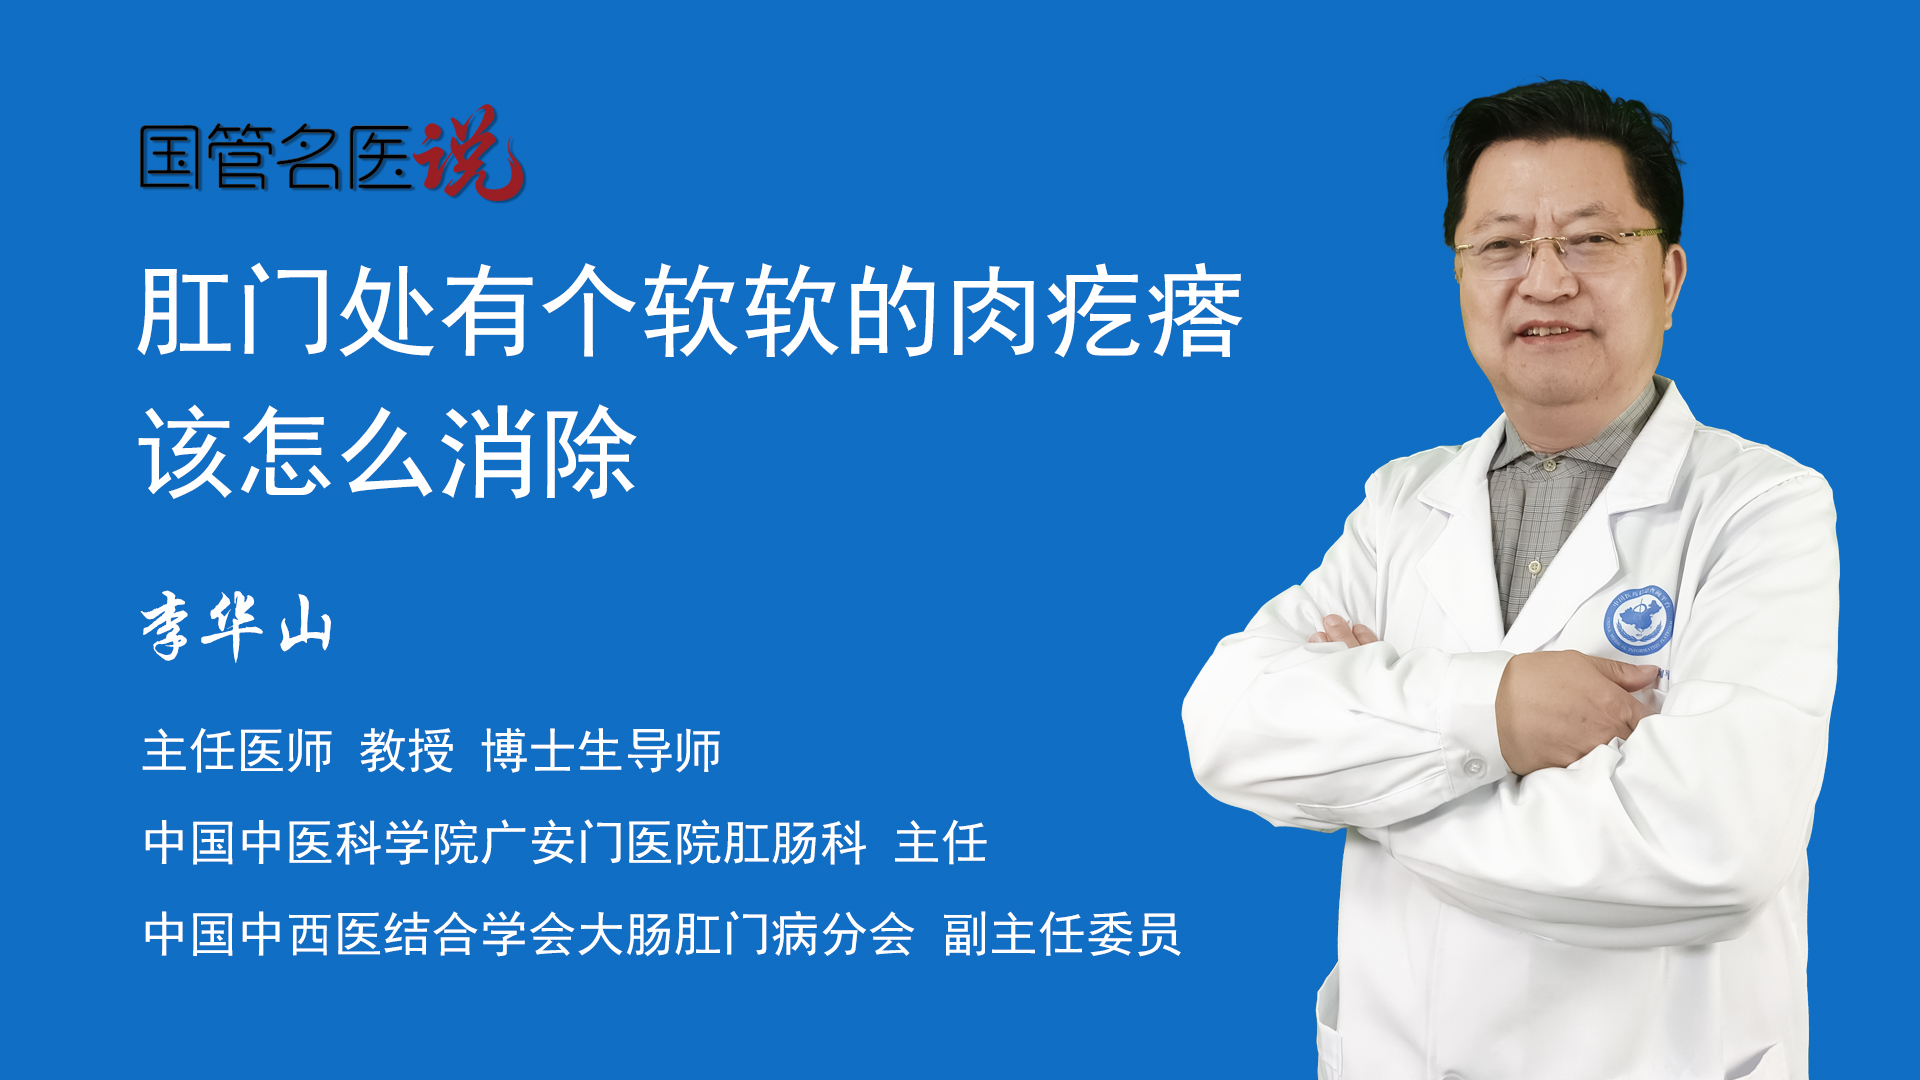 广安门中医院全天在线急您所急-广安门中医院app预约挂号平台